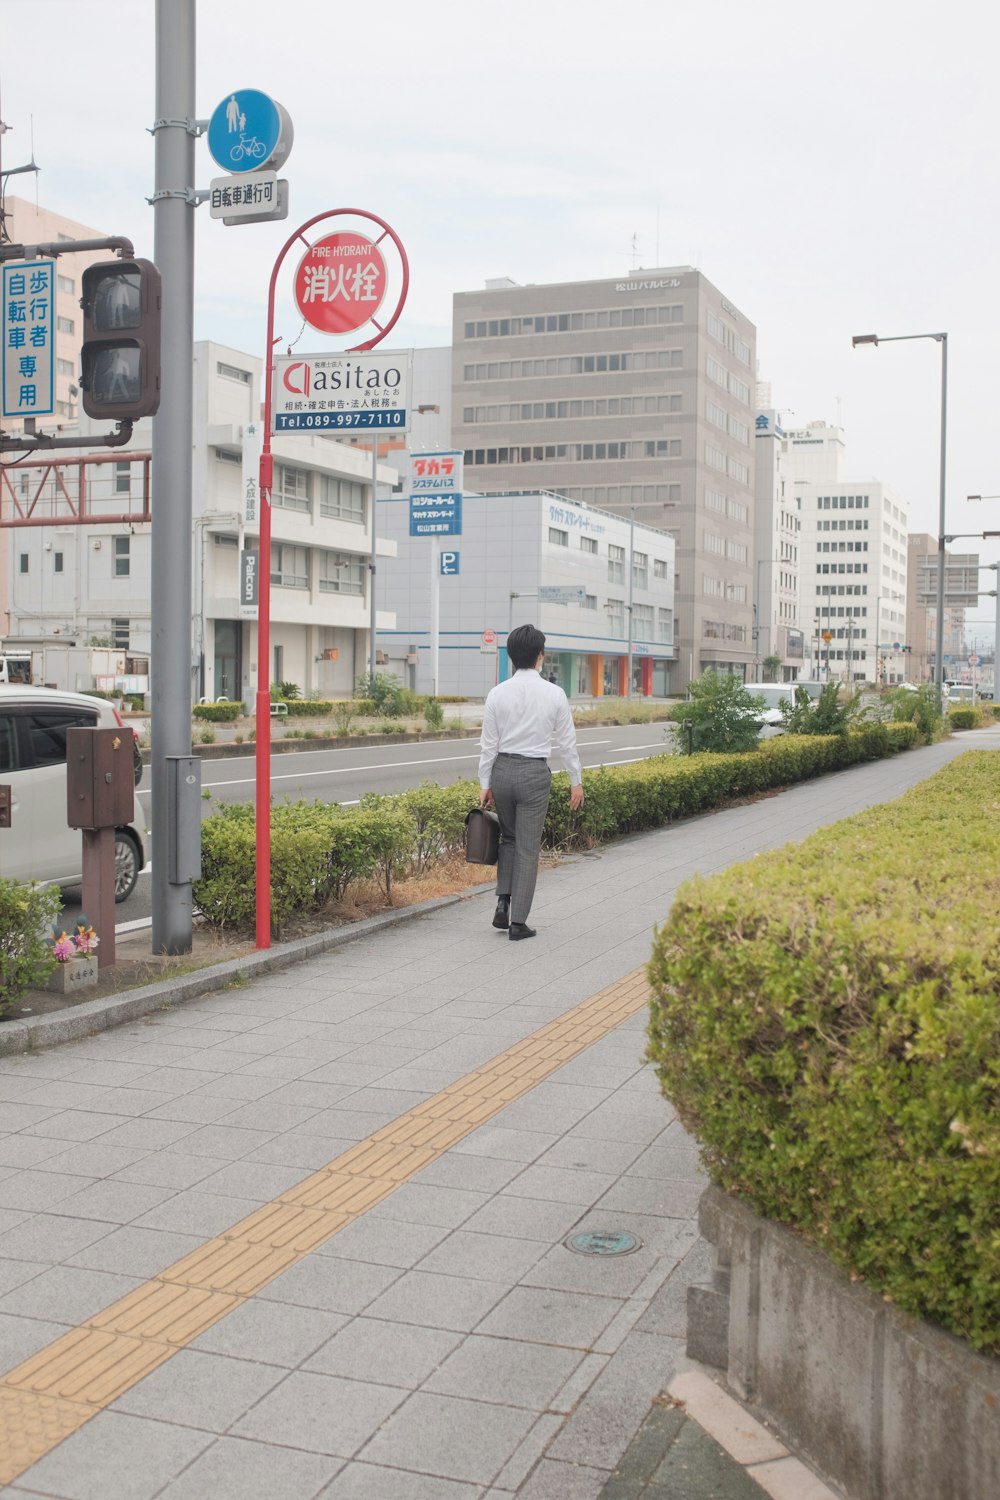 man in white dress shirt and black pants walking on sidewalk during daytime